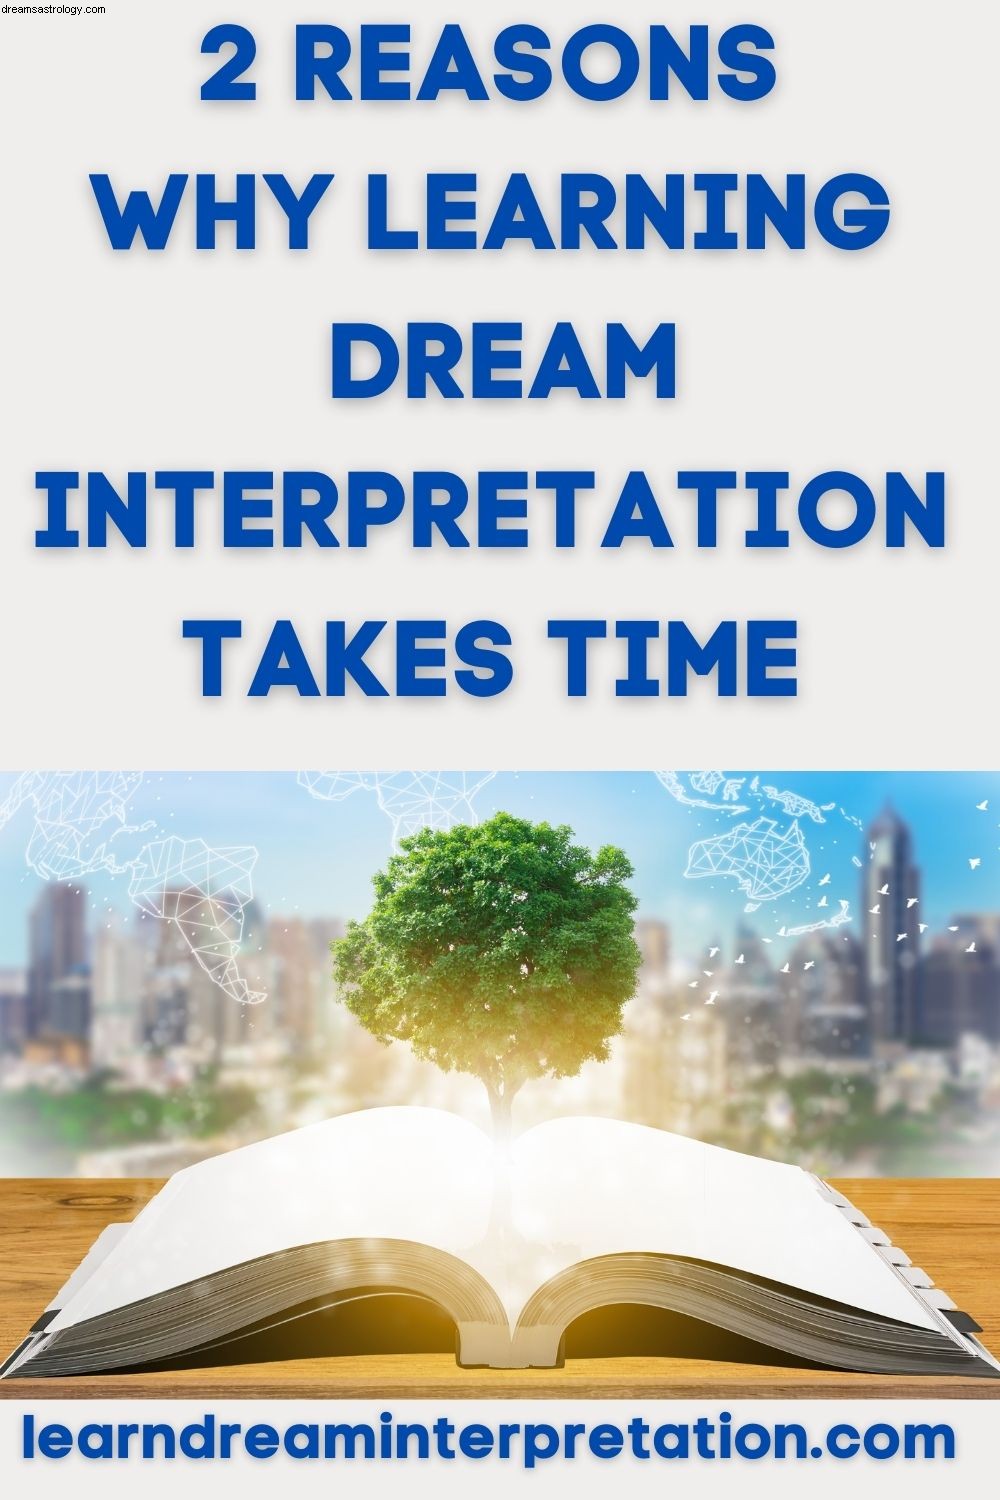 Naučit se interpretaci snů vyžaduje čas 